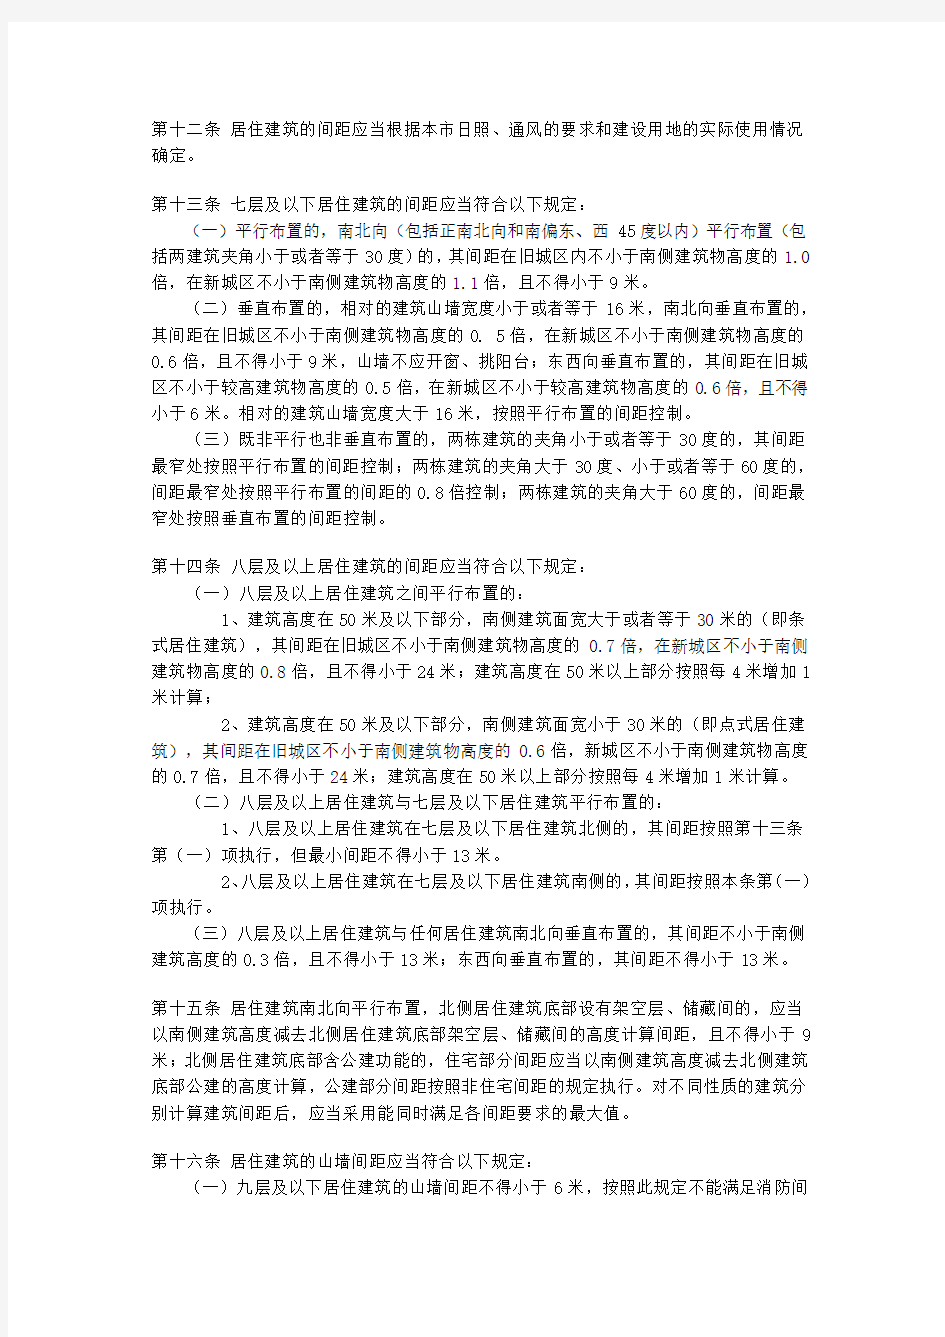 南昌市城市规划管理技术规定(修订)